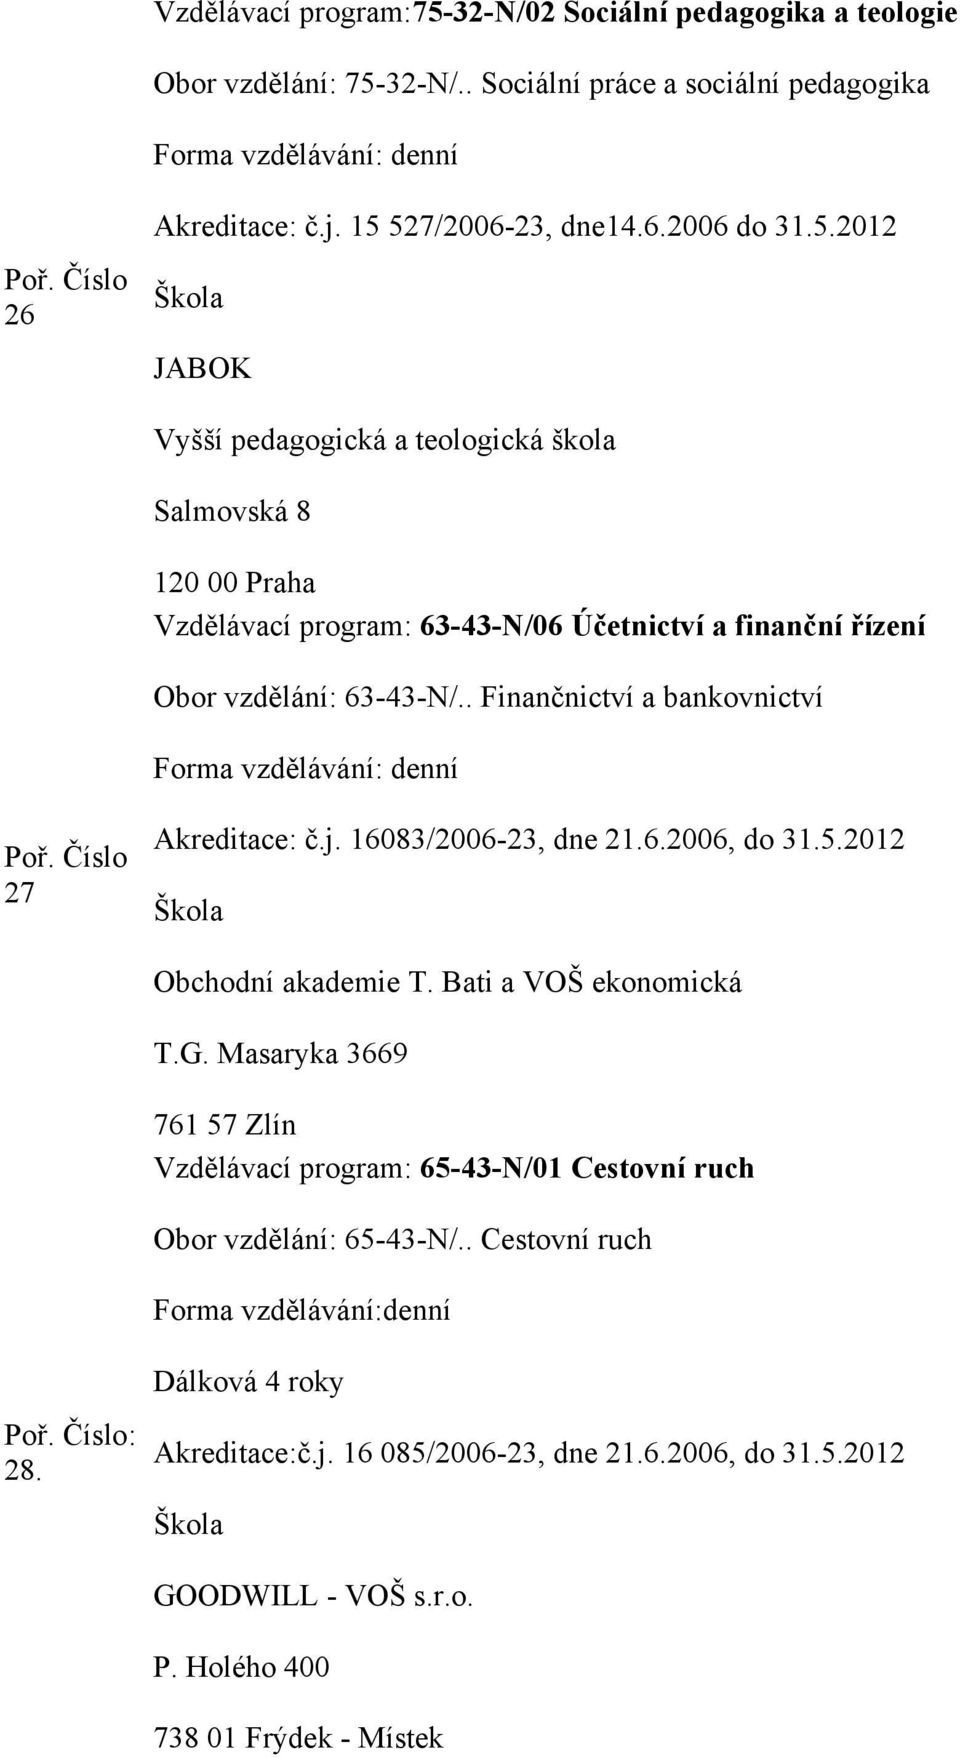 . Finančnictví a bankovnictví Forma vzdělávání: denní 27 Akreditace: č.j. 16083/2006-23, dne 21.6.2006, do 31.5.2012 Obchodní akademie T. Bati a VOŠ ekonomická T.G.